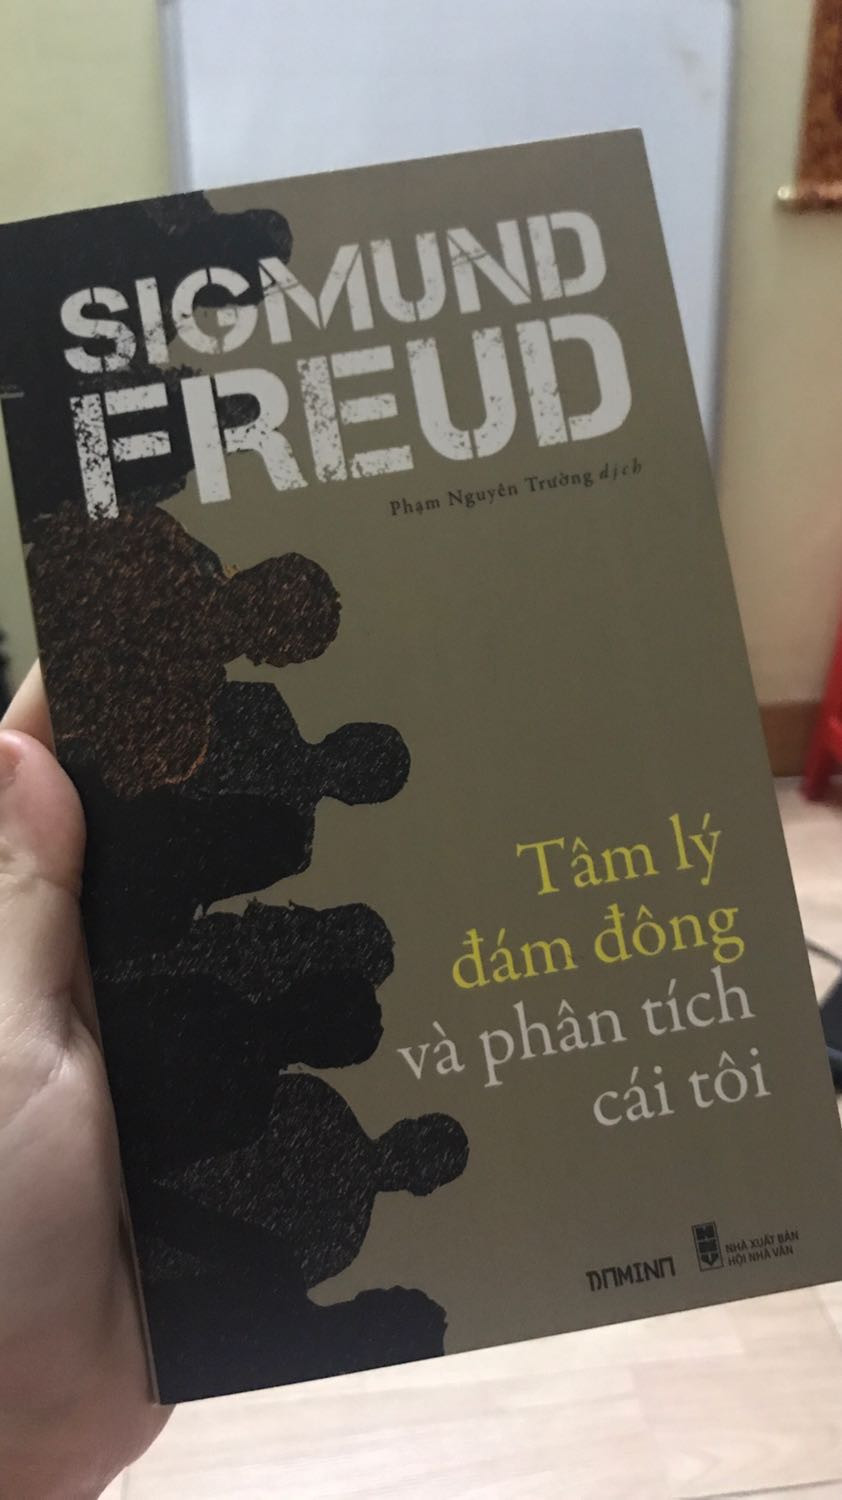 TÂM LÝ ĐÁM ĐÔNG VÀ PHÂN TÍCH CÁI TÔI - Sigmund Freud - Phạm Nguyên Trường dịch (bìa mềm)